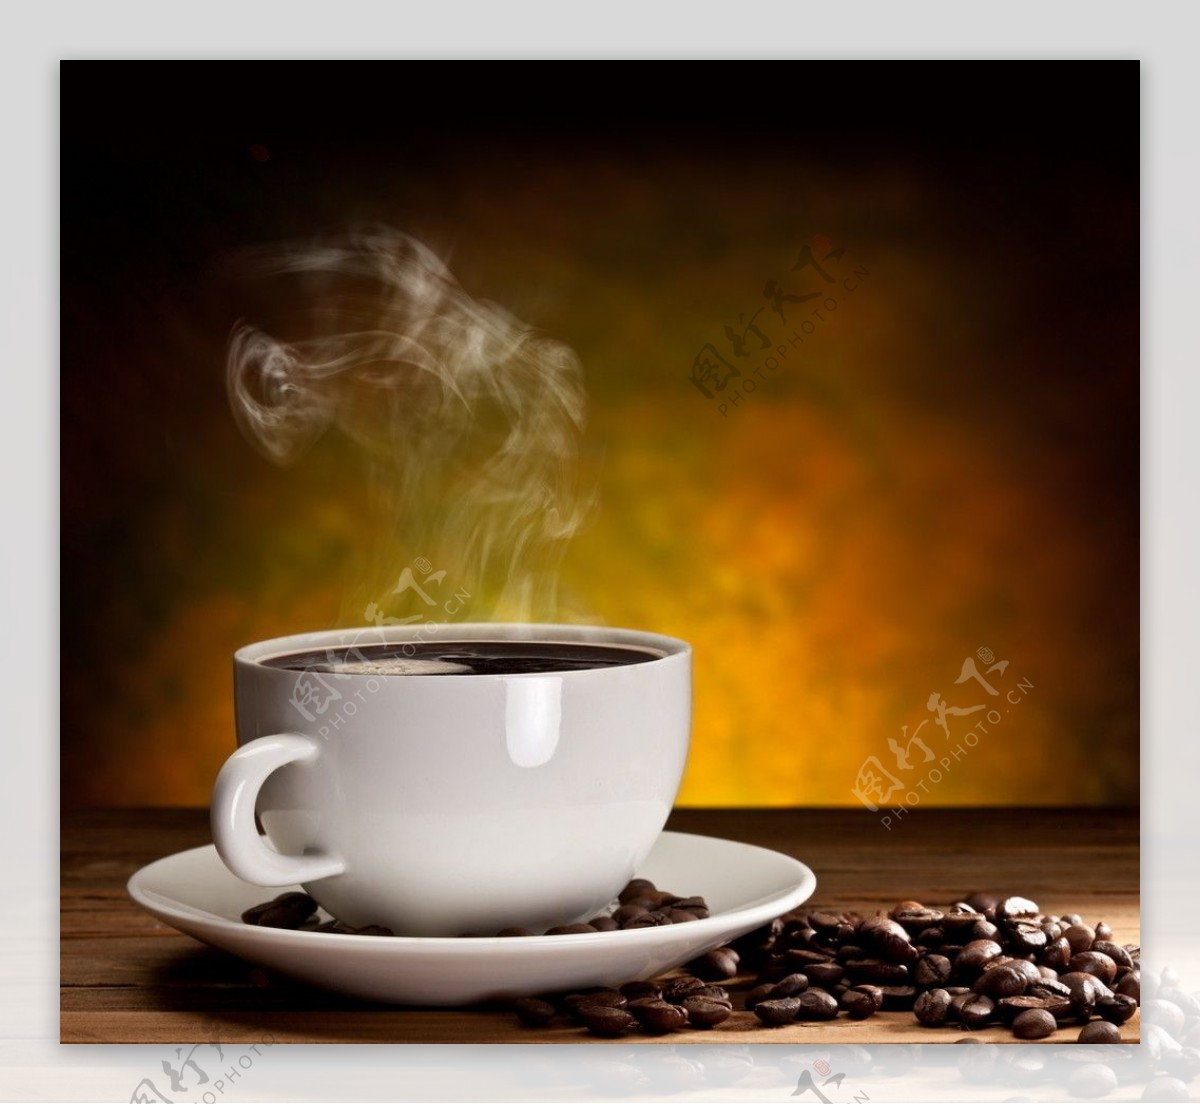 咖啡咖啡豆图片